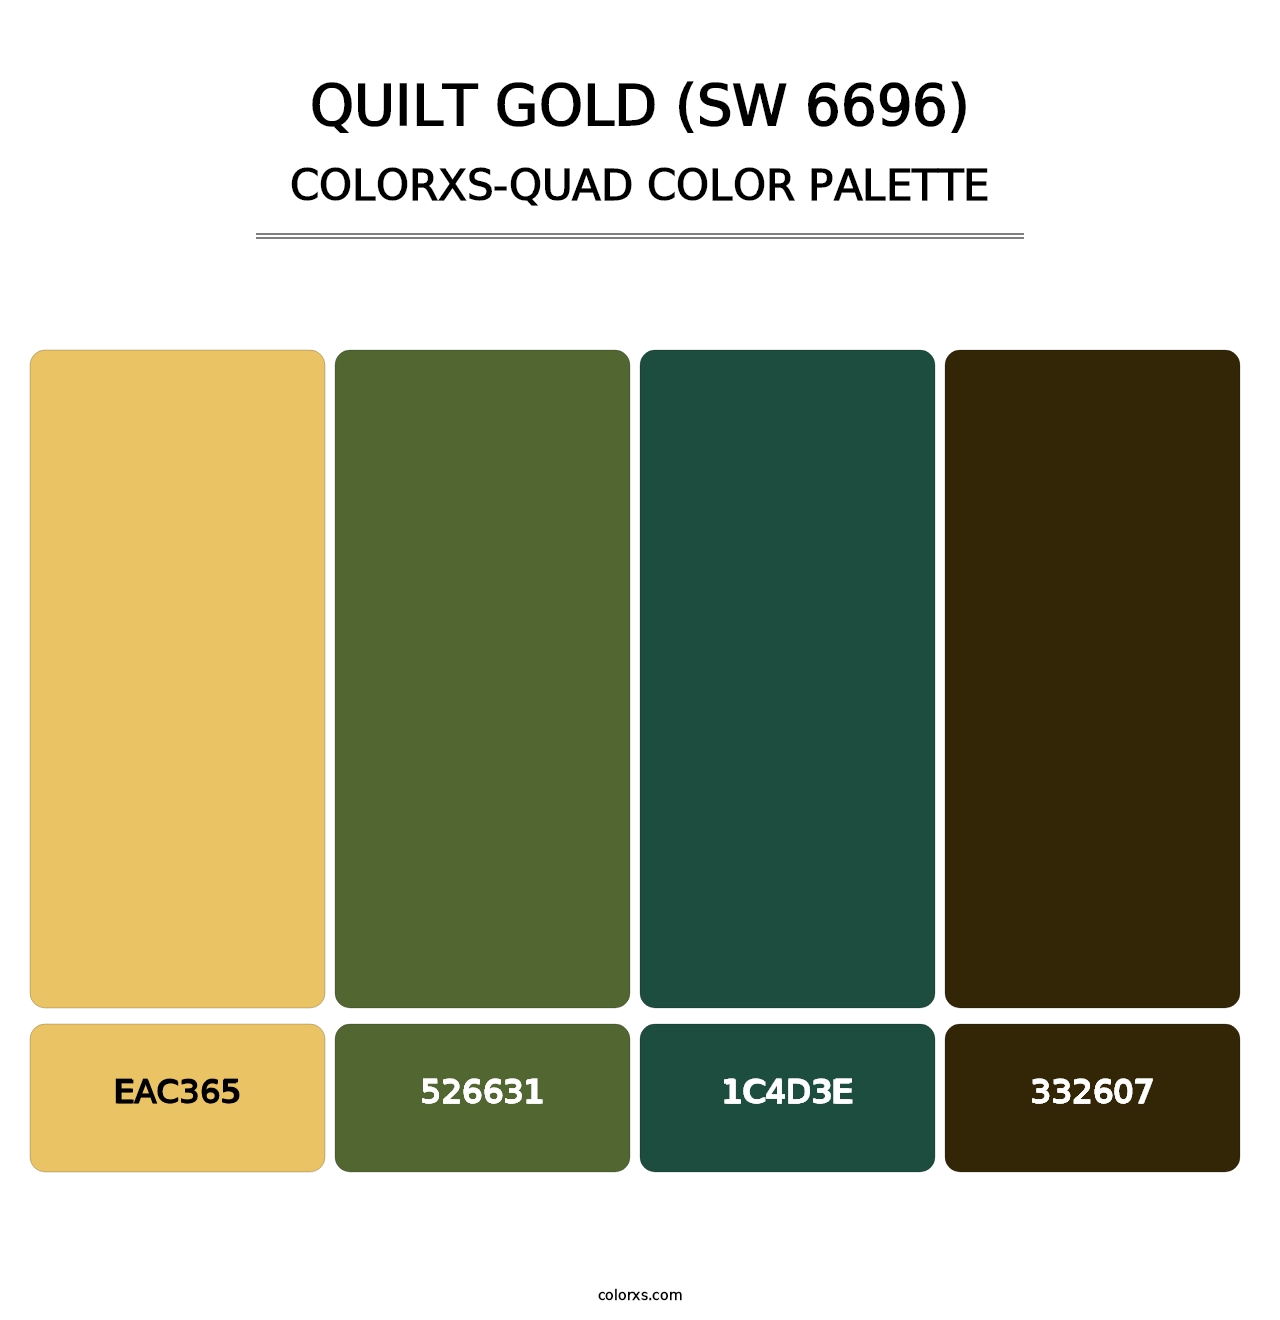 Quilt Gold (SW 6696) - Colorxs Quad Palette